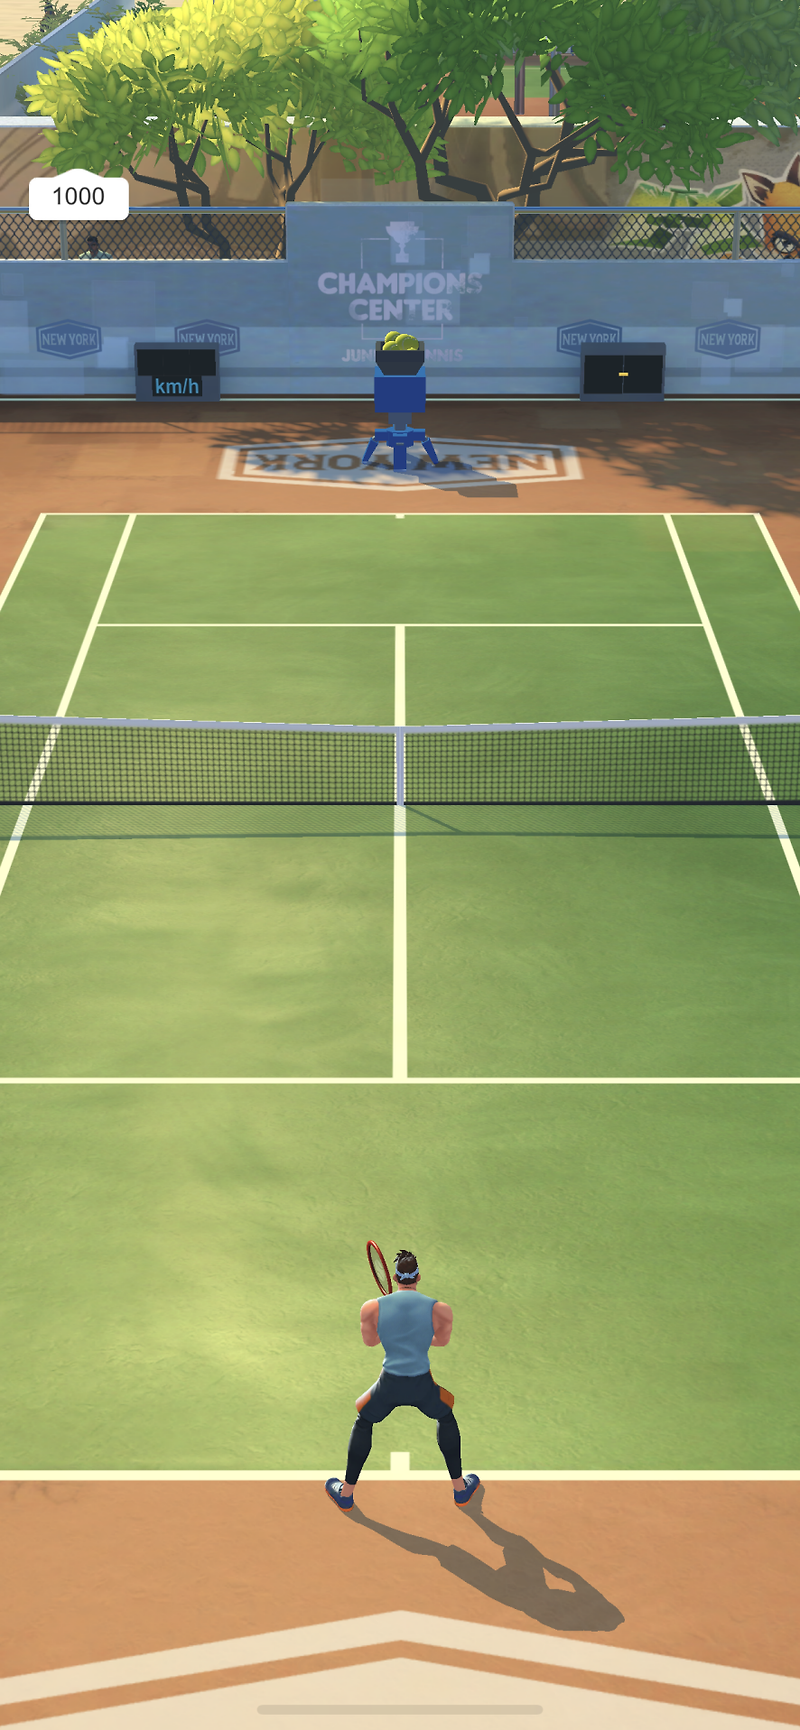 재미있는 스포츠 게임 테니스 클래시 무료 다운로드